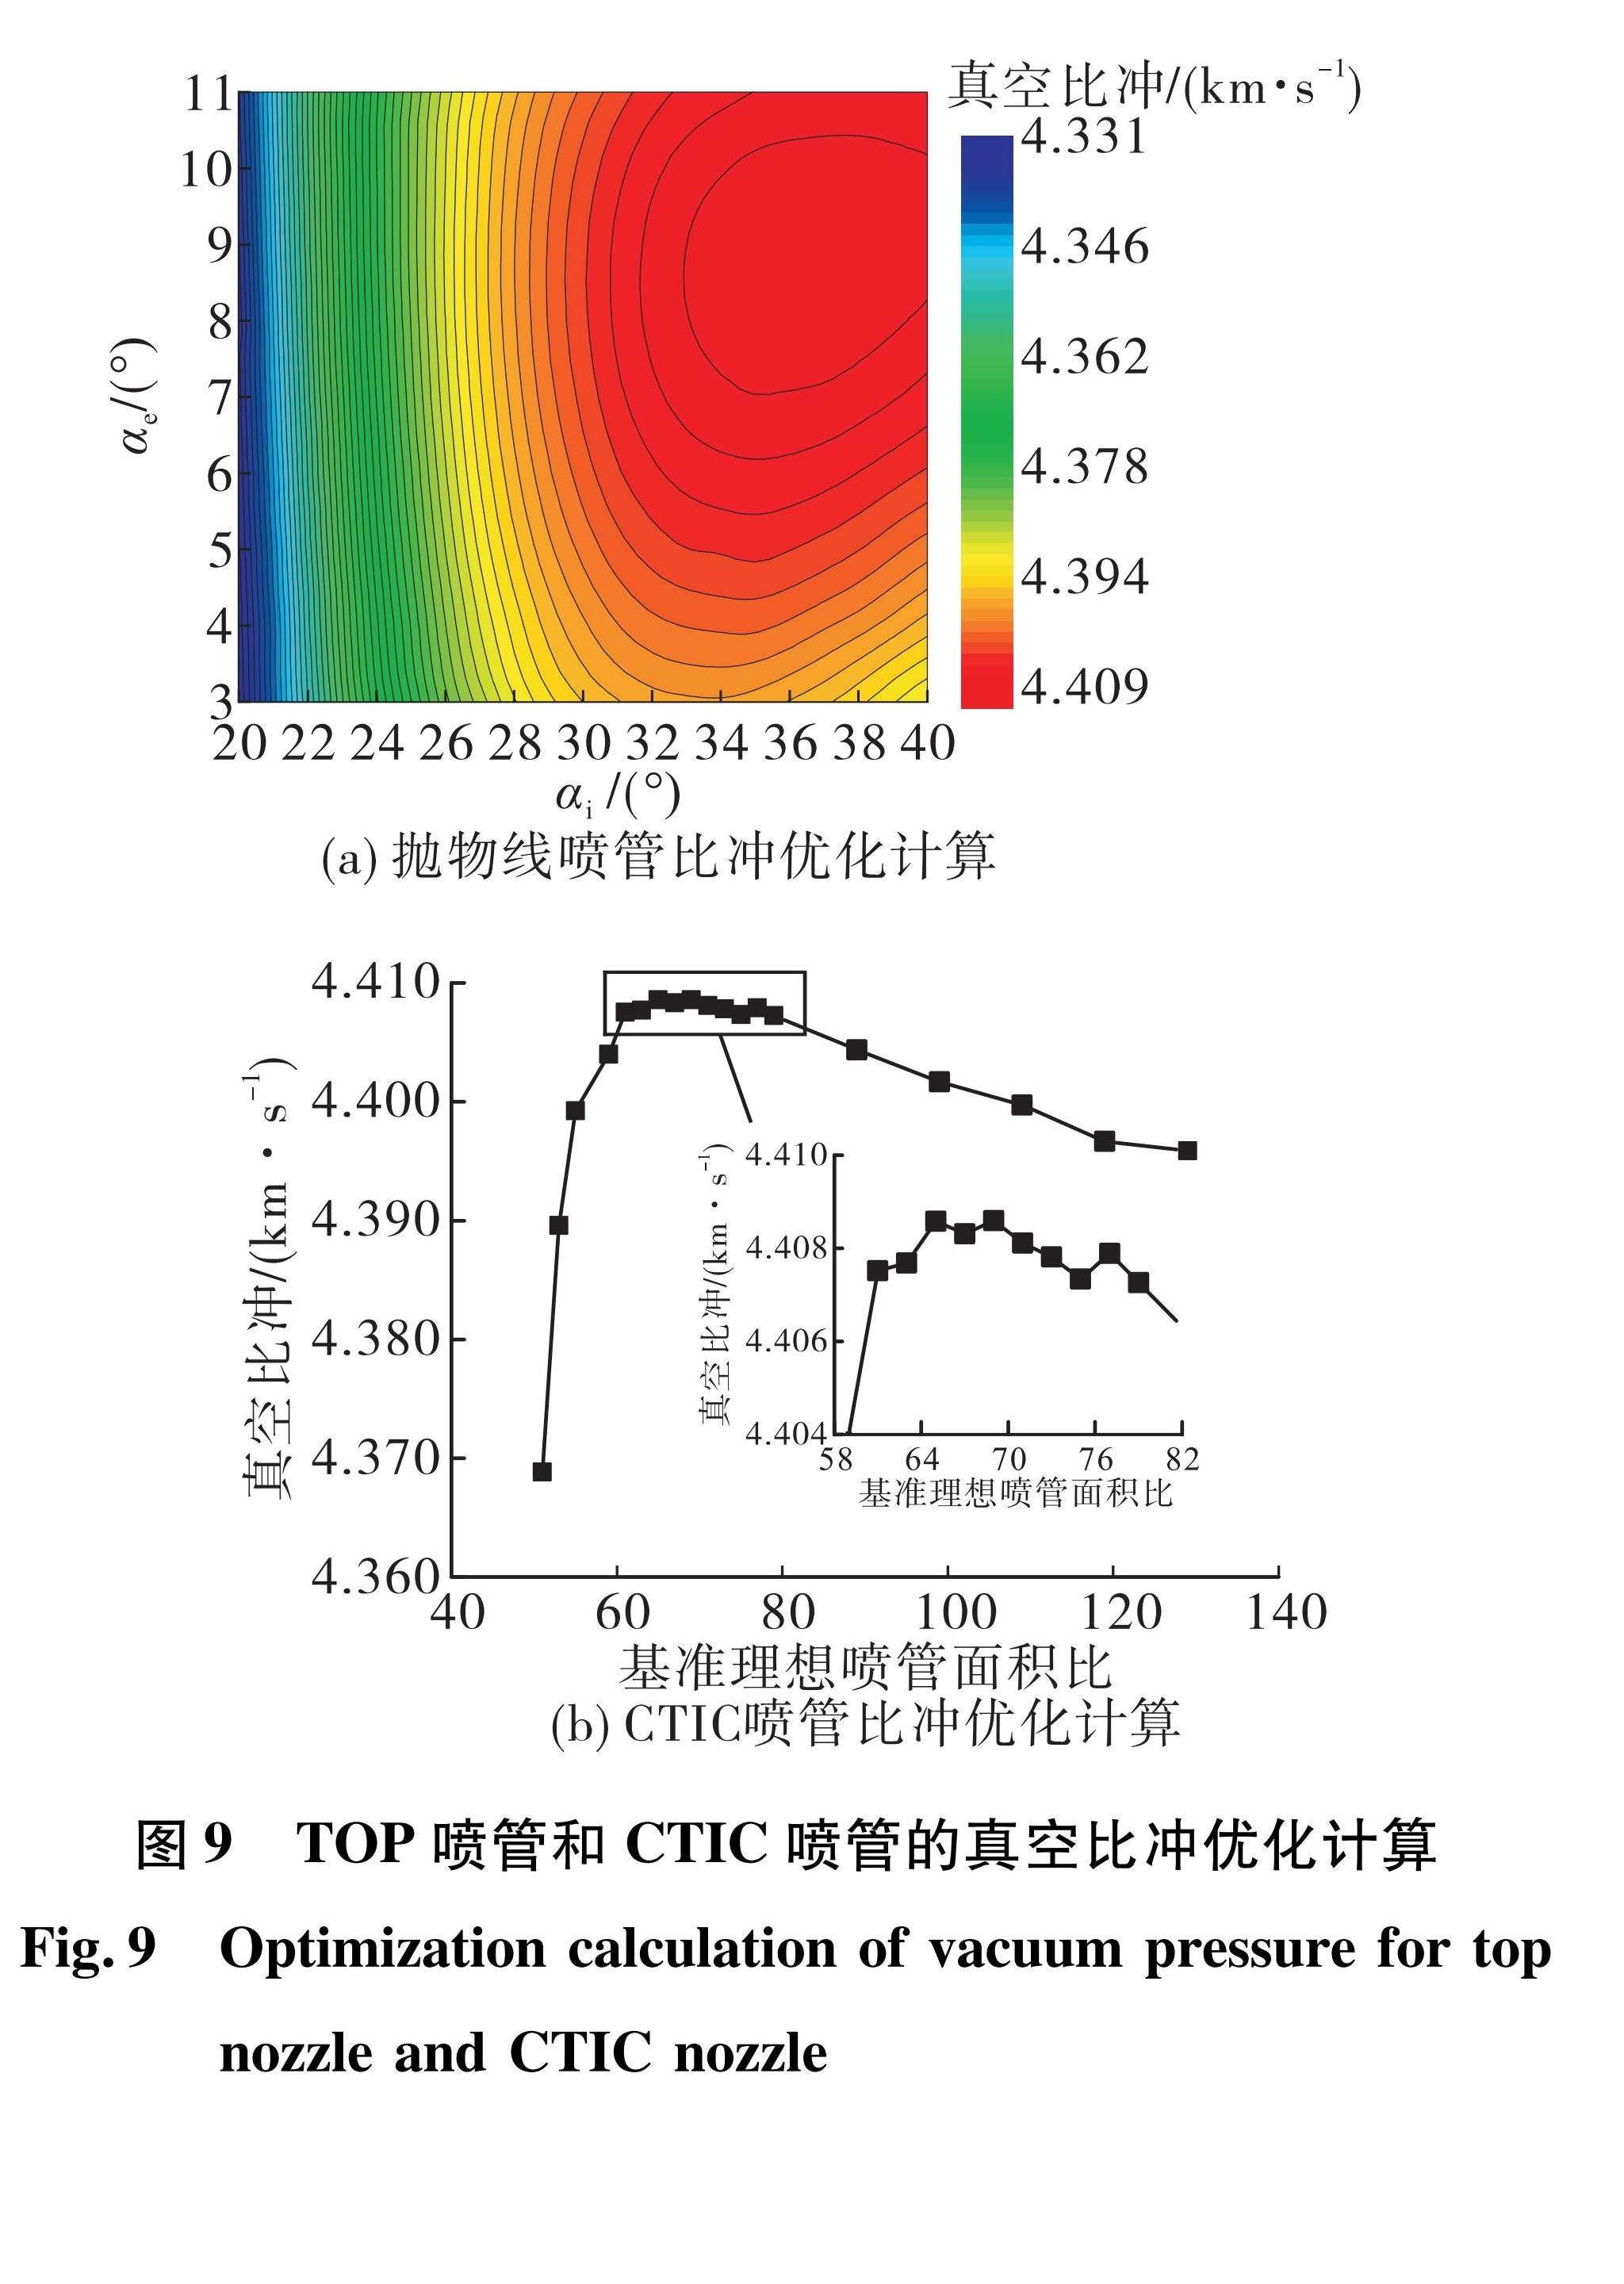 图9 TOP喷管和CTIC喷管的真空比冲优化计算<br/>Fig.9 Optimization calculation of vacuum pressure for top nozzle and CTIC nozzle